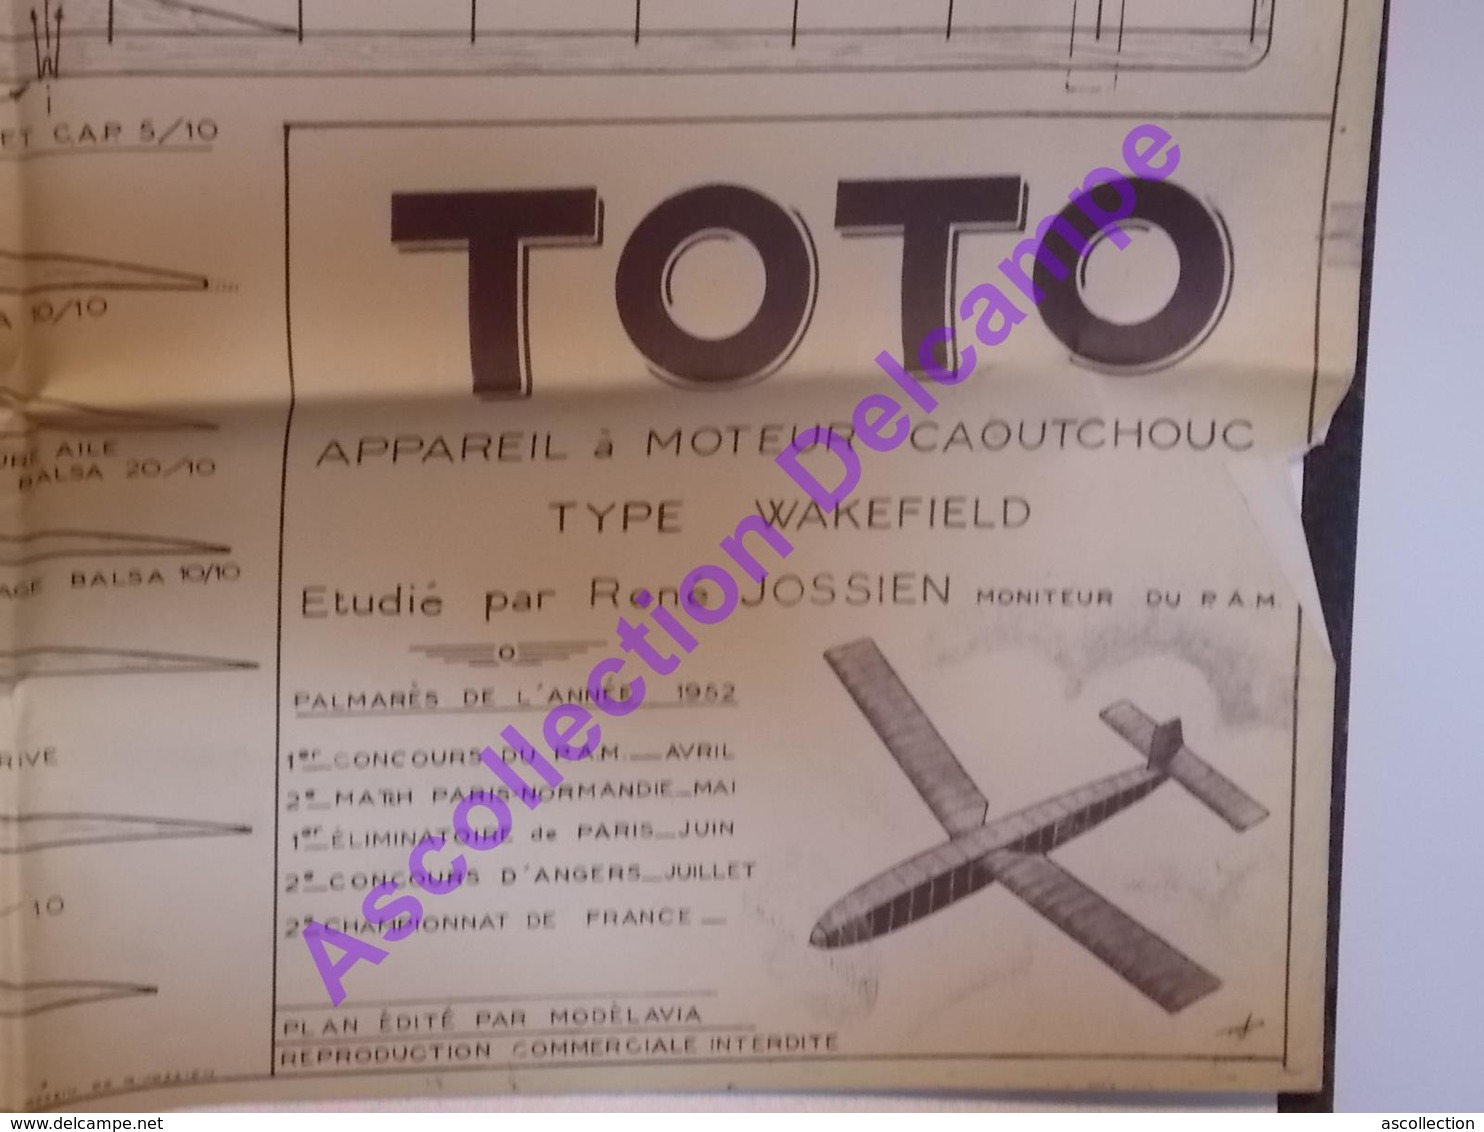 Plan Aeromodelisme Maquette Avion Planeur Le Toto Moteur Caoutchouc Wakefield 1952 PAM Modèlavia - Vliegtuigen & Helikopters